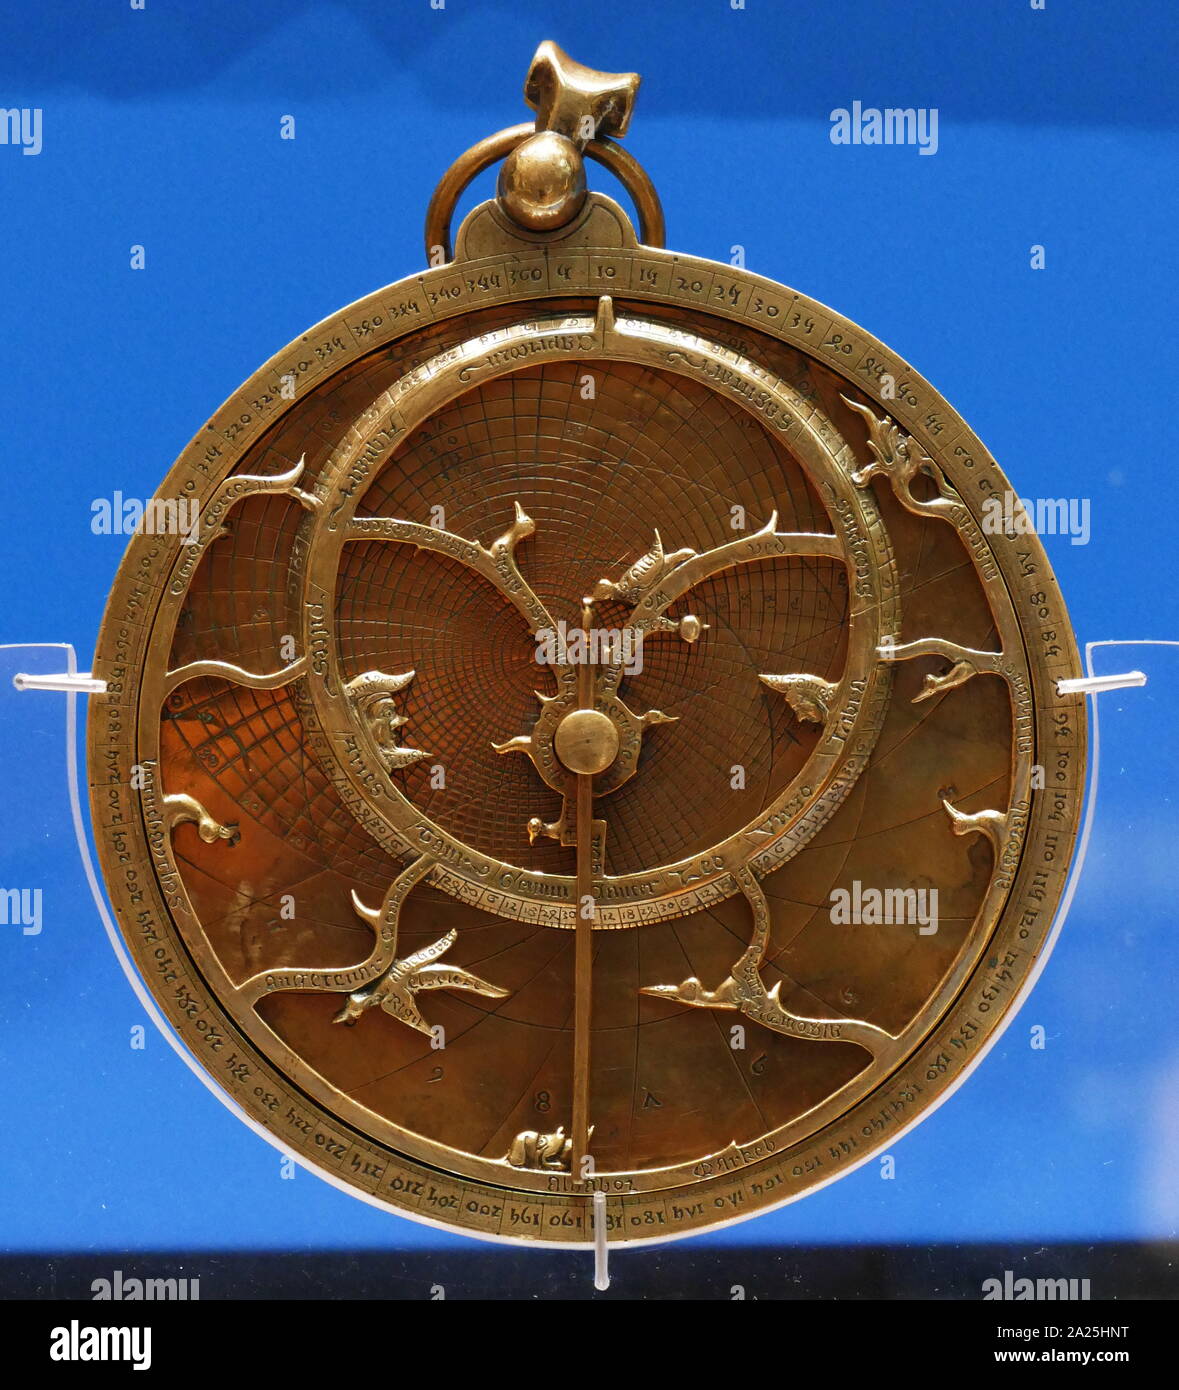 Il 'Chaucer astrolabio". Questo tipo di astrolabio è stata legata al poeta, Geoffrey Chaucer (c. 1340-1400), che ha tenuto importanti uffici reale sotto Richard II. Un astrolabio è essenzialmente una mappa bidimensionale della sfera celeste. Questo particolare astrolabio, datata 1326, assomiglia lo strumento descritto in Geoffrey Chaucer il trattato sull'astrolabio. Foto Stock